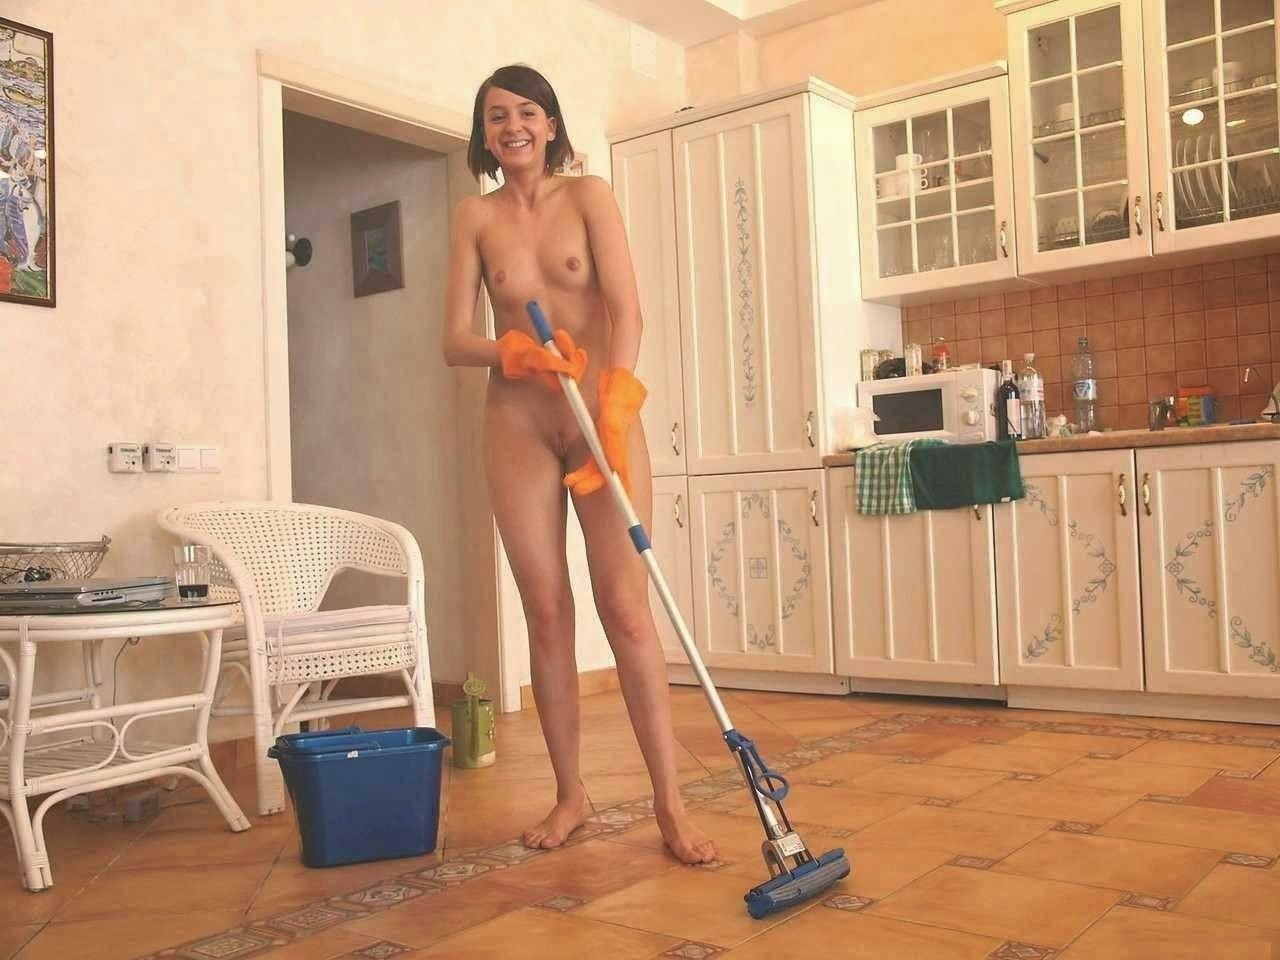 Уборка дома без трусов (125 фото)